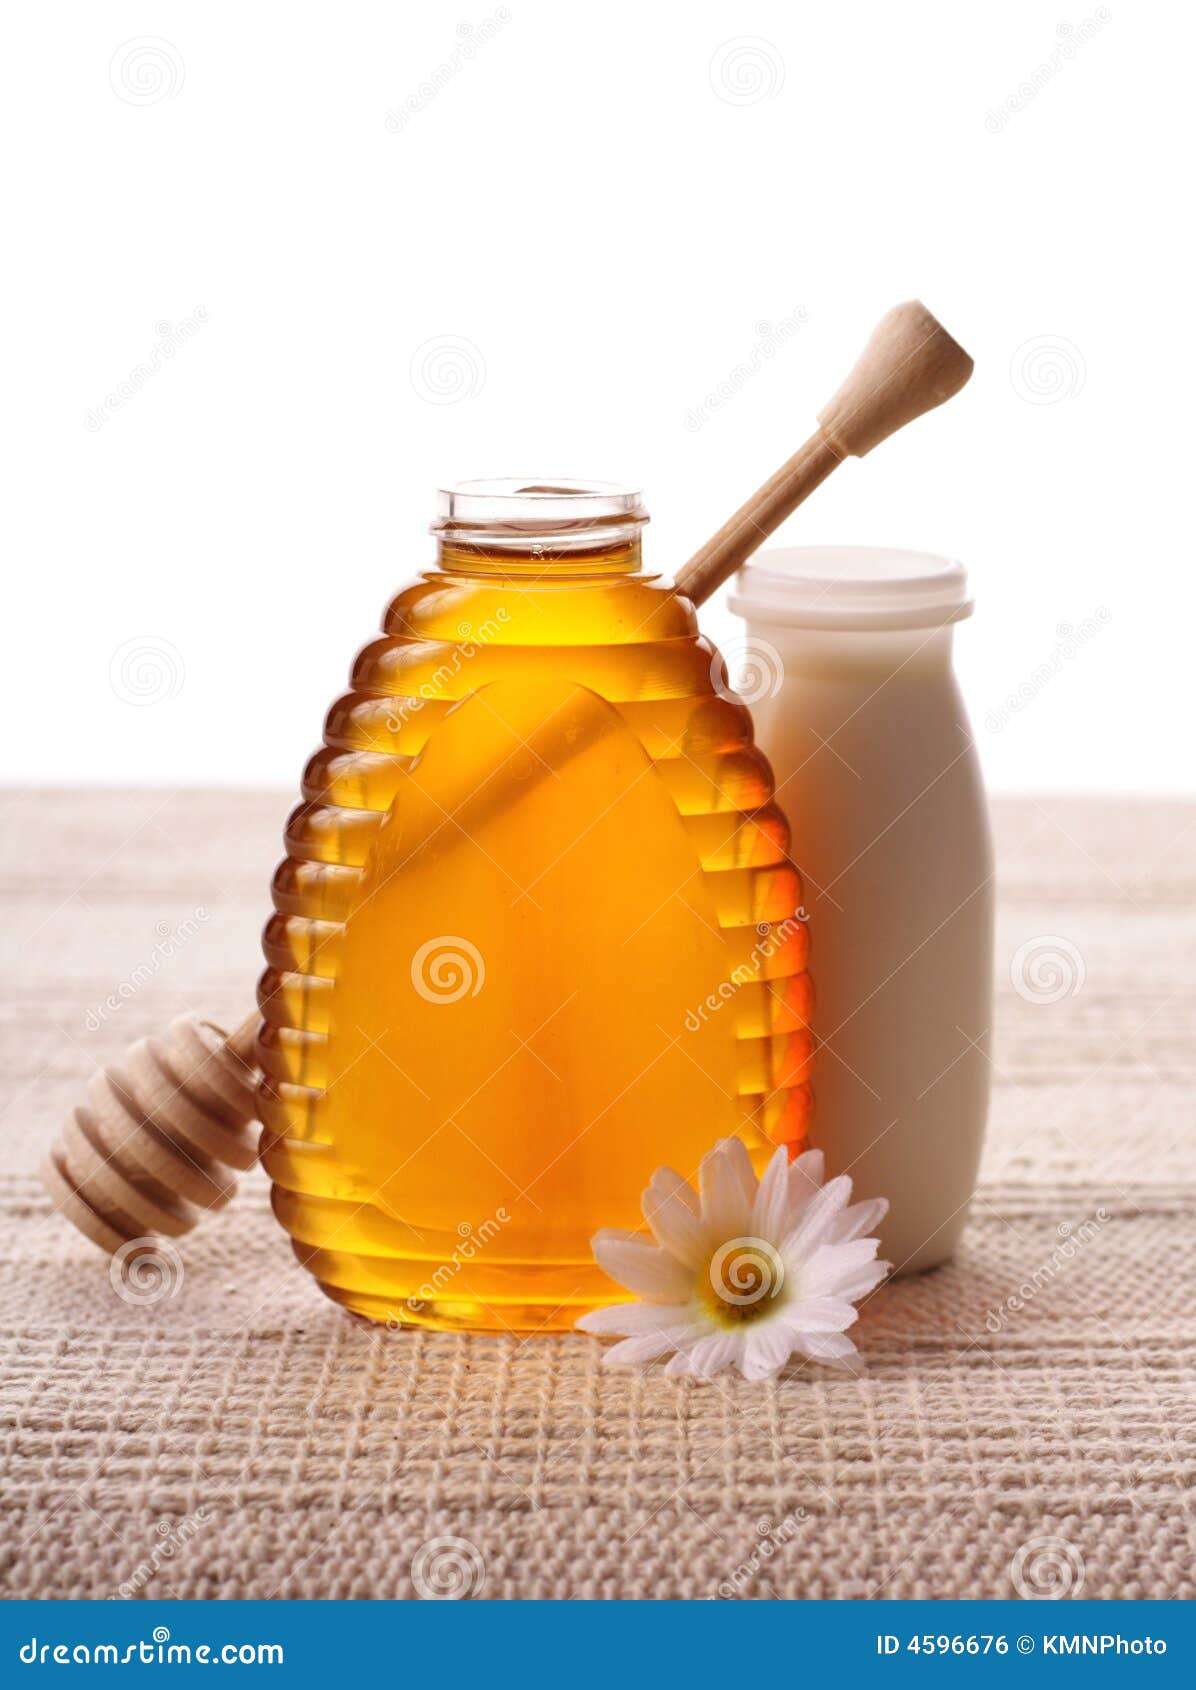 【全台】史上最可愛的牛奶!7-ELEVEN與蜜蜂工坊聯名，首度推出「蜜蜂工坊蜂蜜牛奶」 - Yummyday美味日子